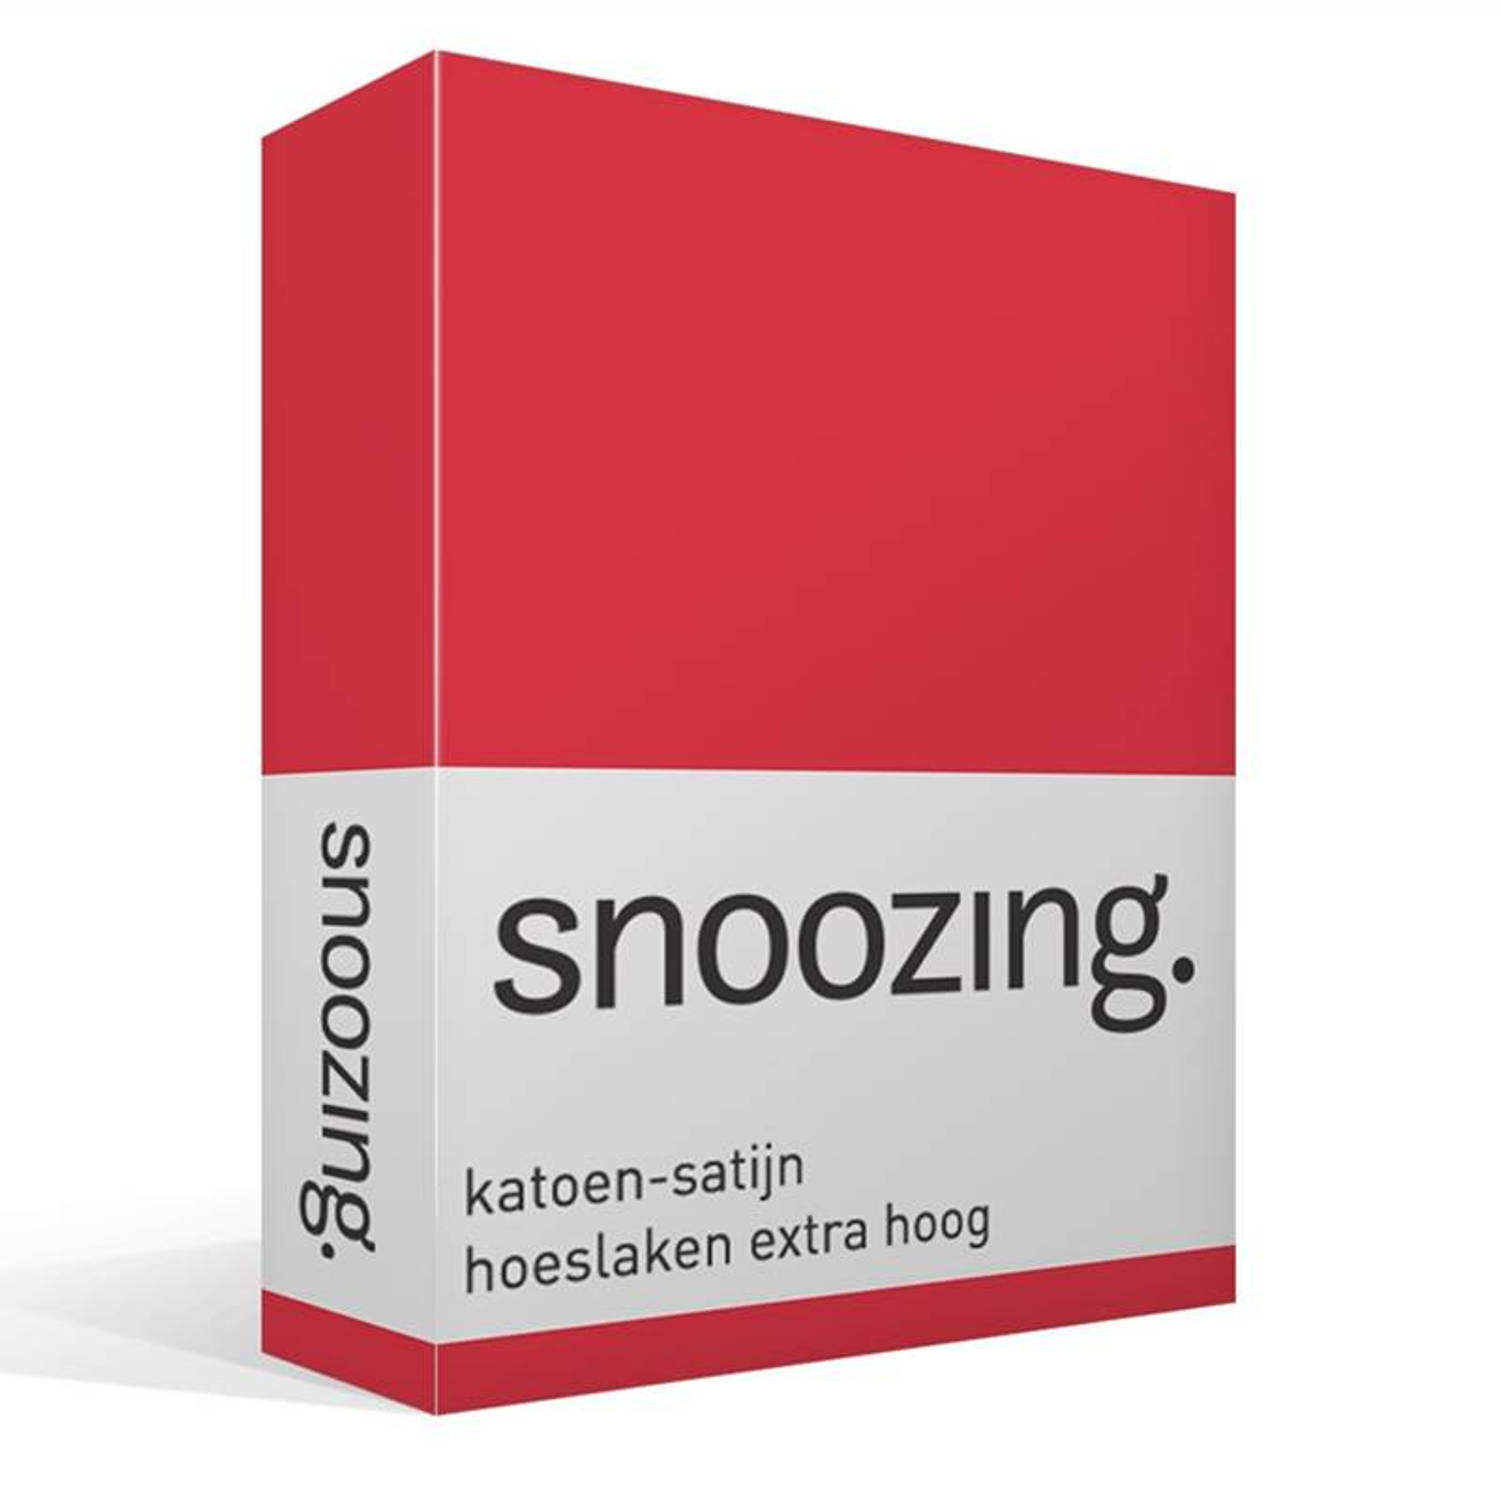 Snoozing katoen-satijn hoeslaken extra hoog - 2-persoons (120x220 cm)